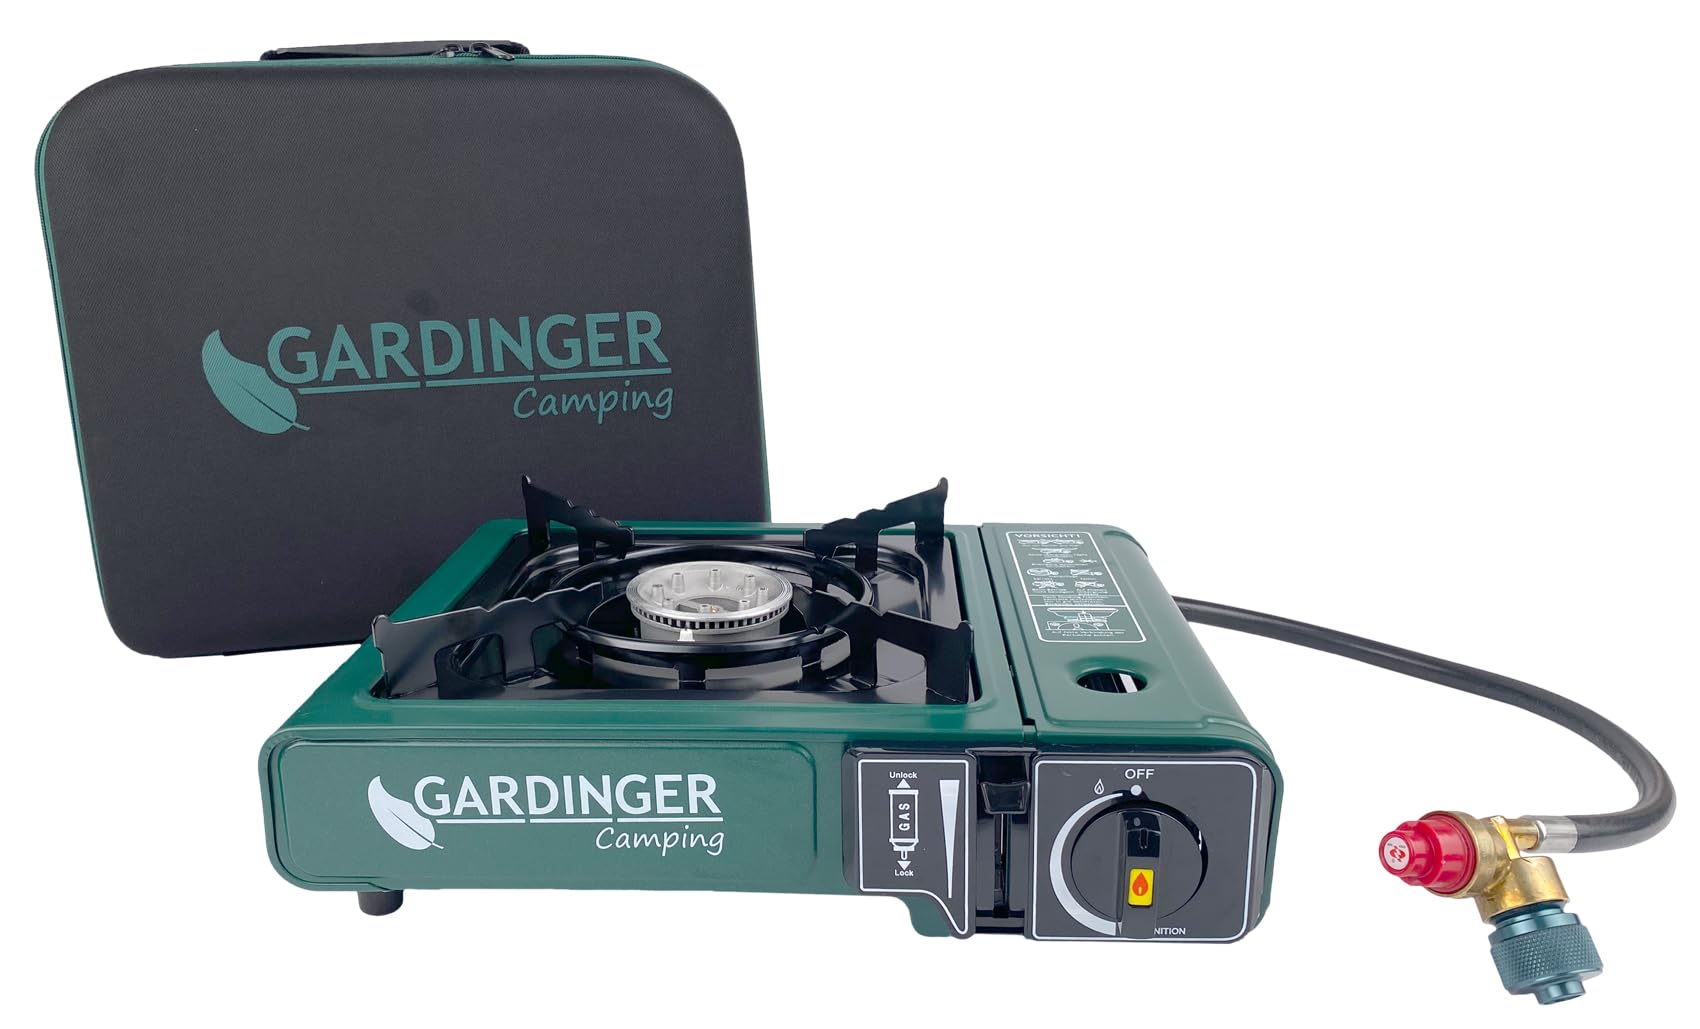 GARDINGER einflammiger universal-Kartuschen Kocher Camp Allgas mit Piezozündung + Adapter-Schlauch + hochwertiger Koffer